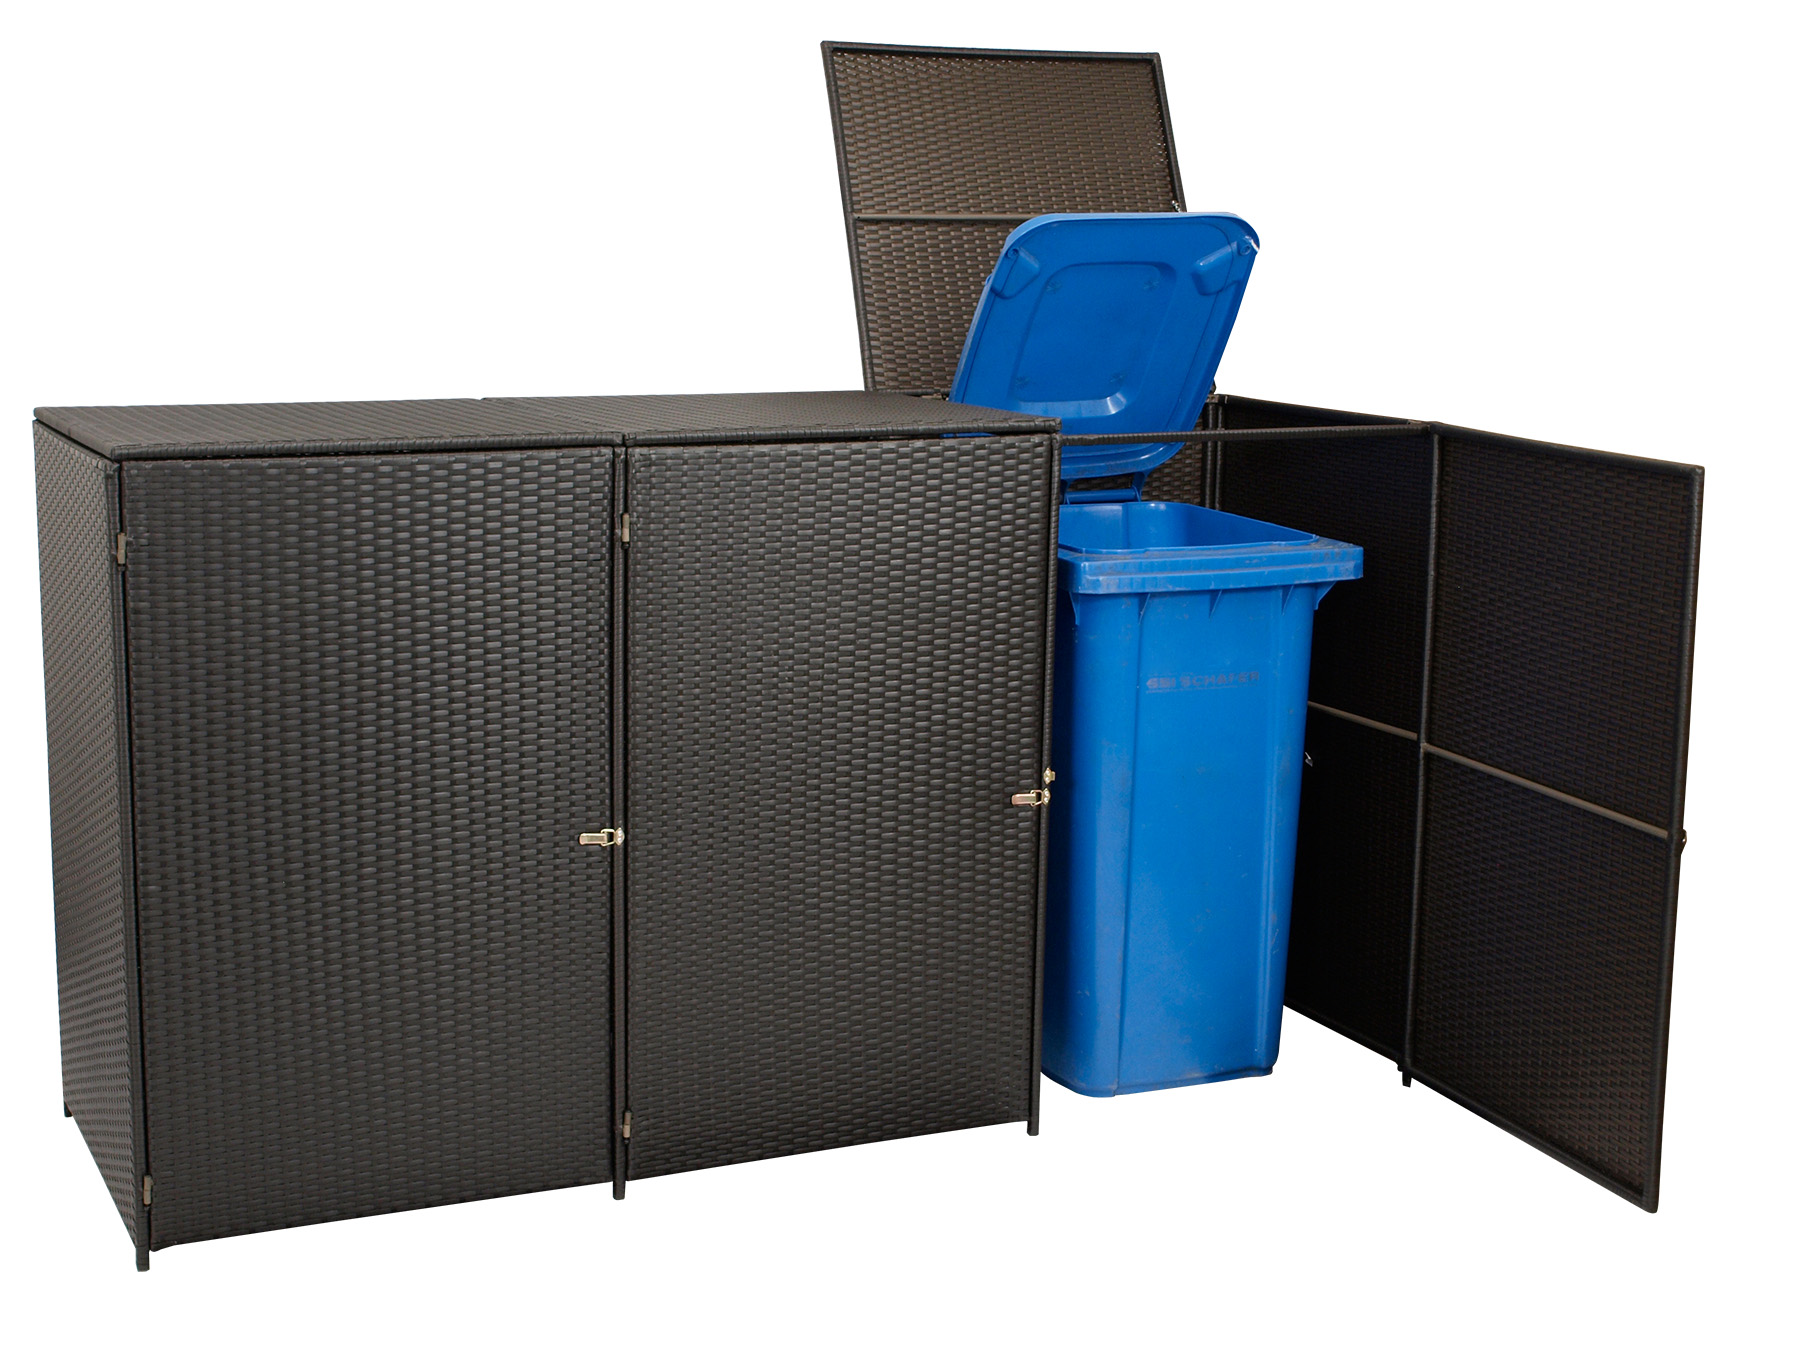 Mülltonnenbox Stahl + Polyrattan mocca, 189x66x109cm, für 3 Tonnen bis 120 Liter